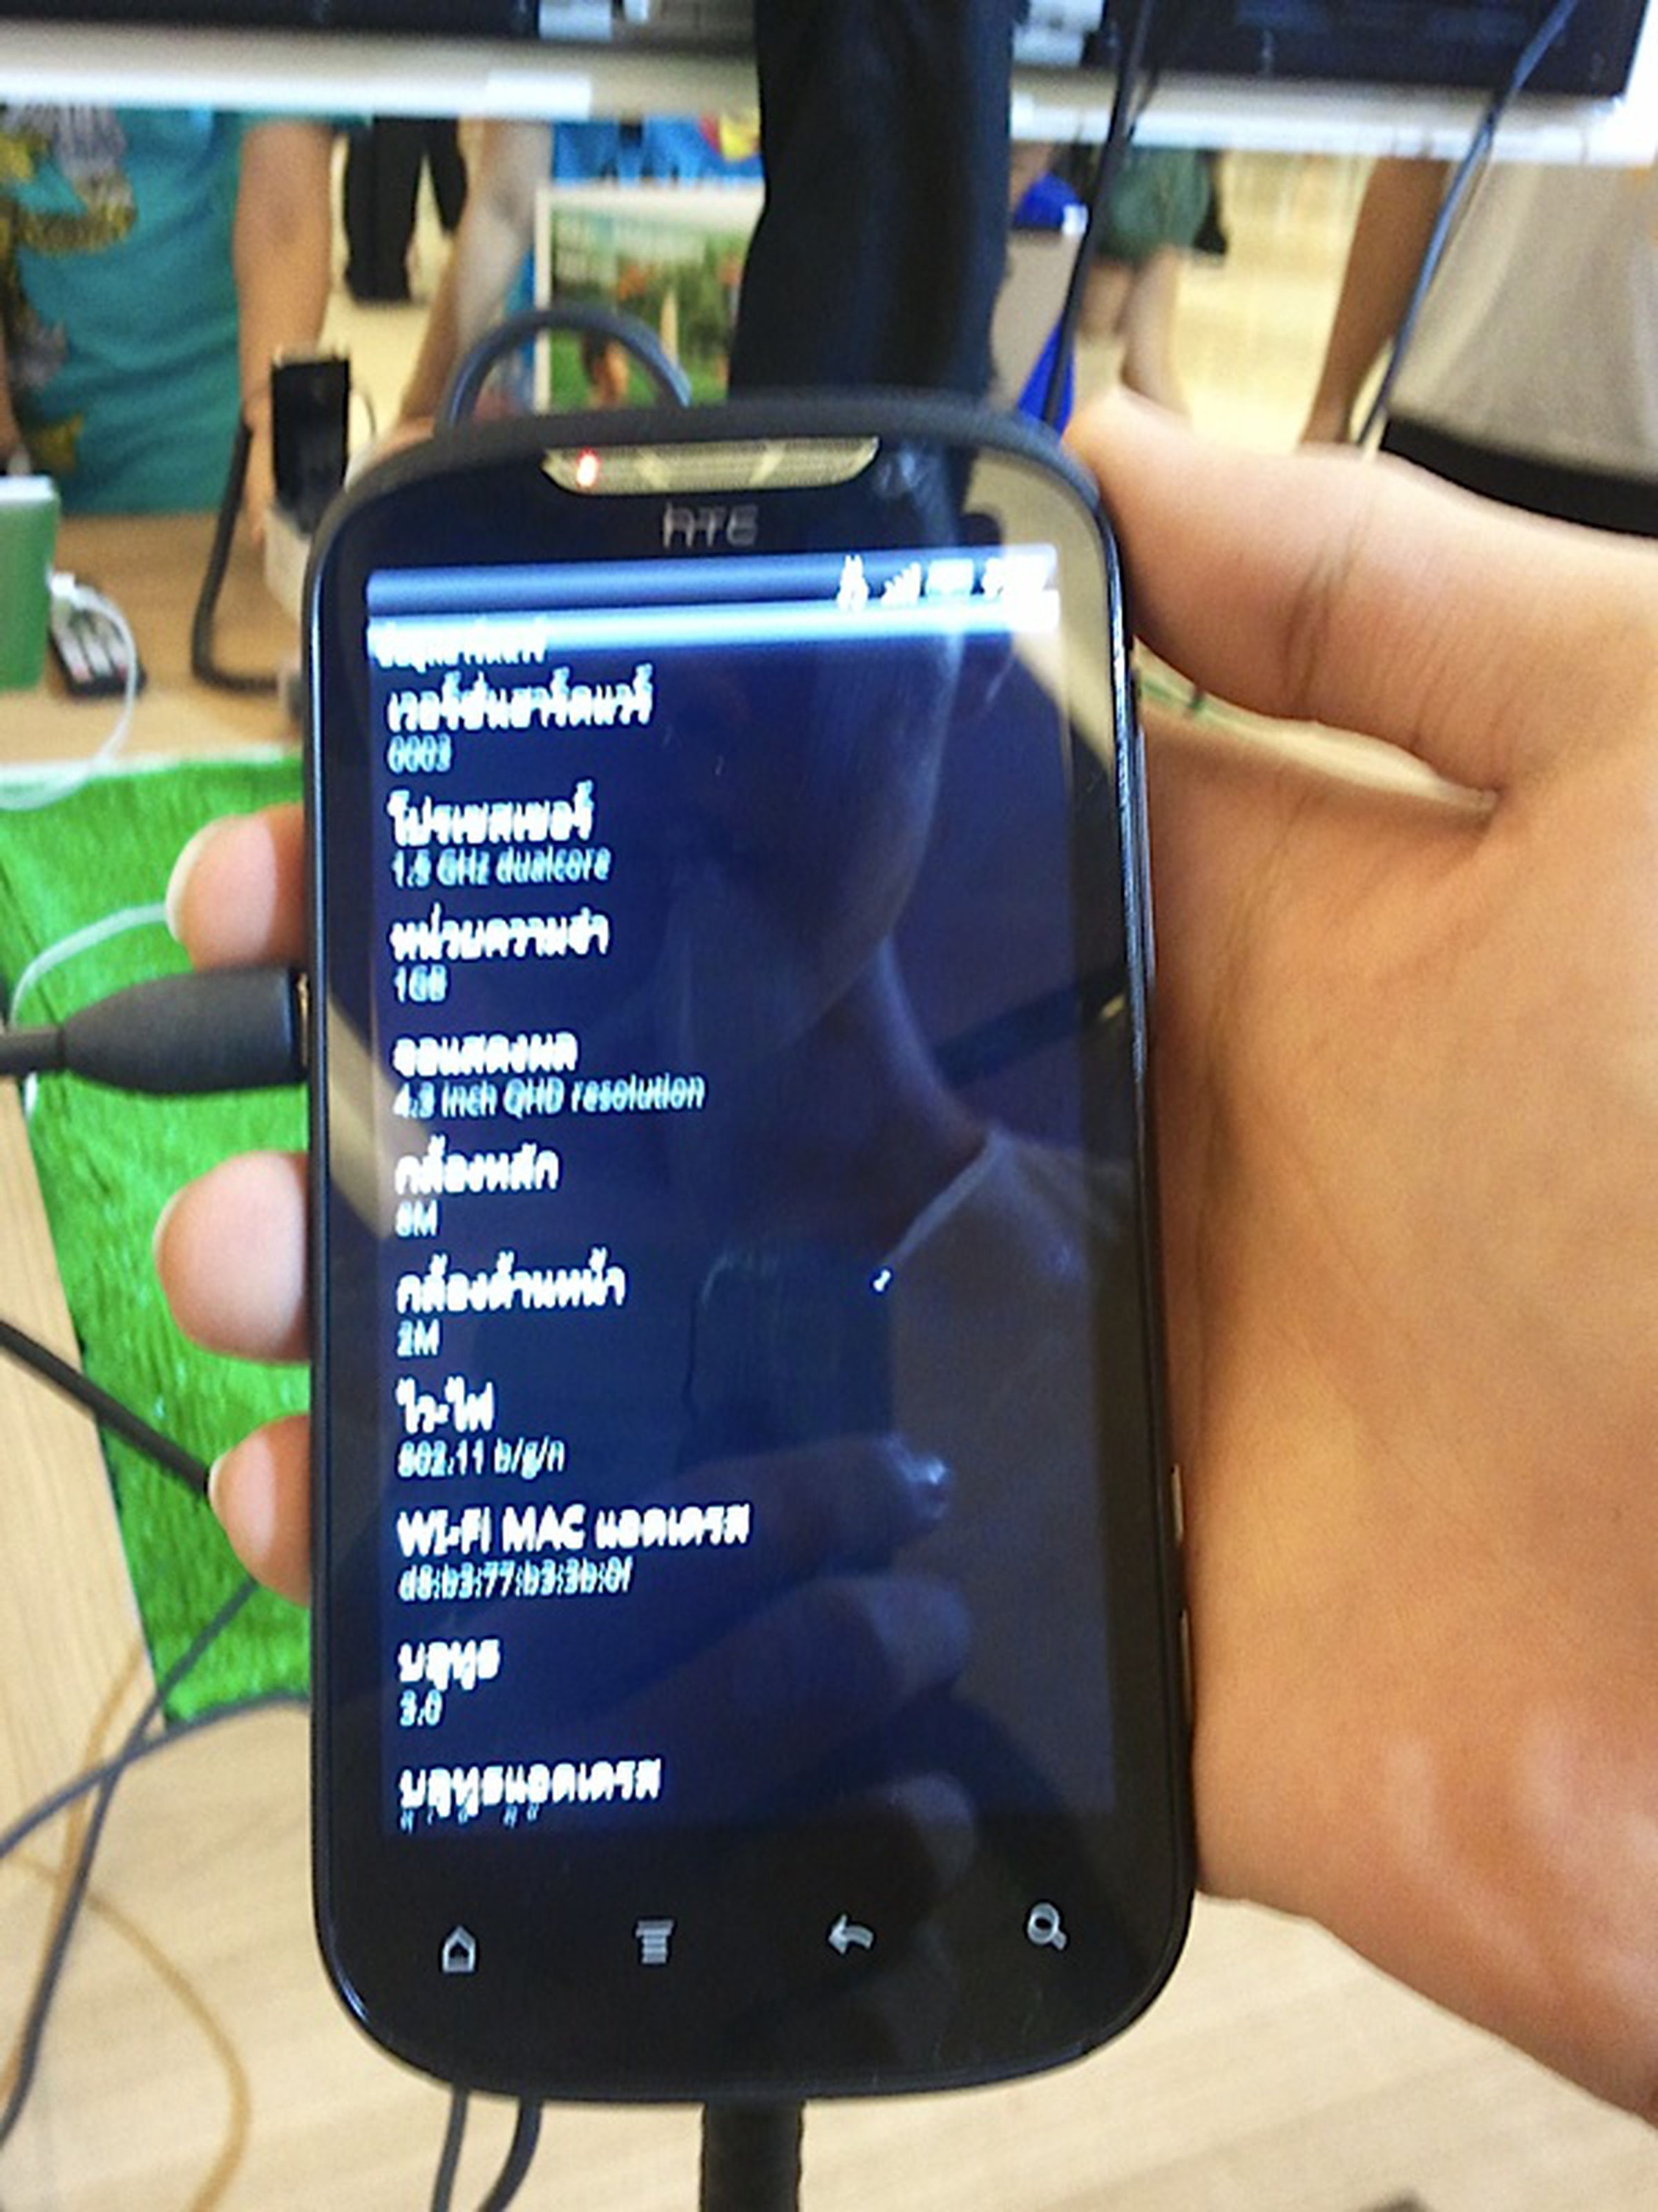 HTC Ruby / Amaze 4G leaked photos